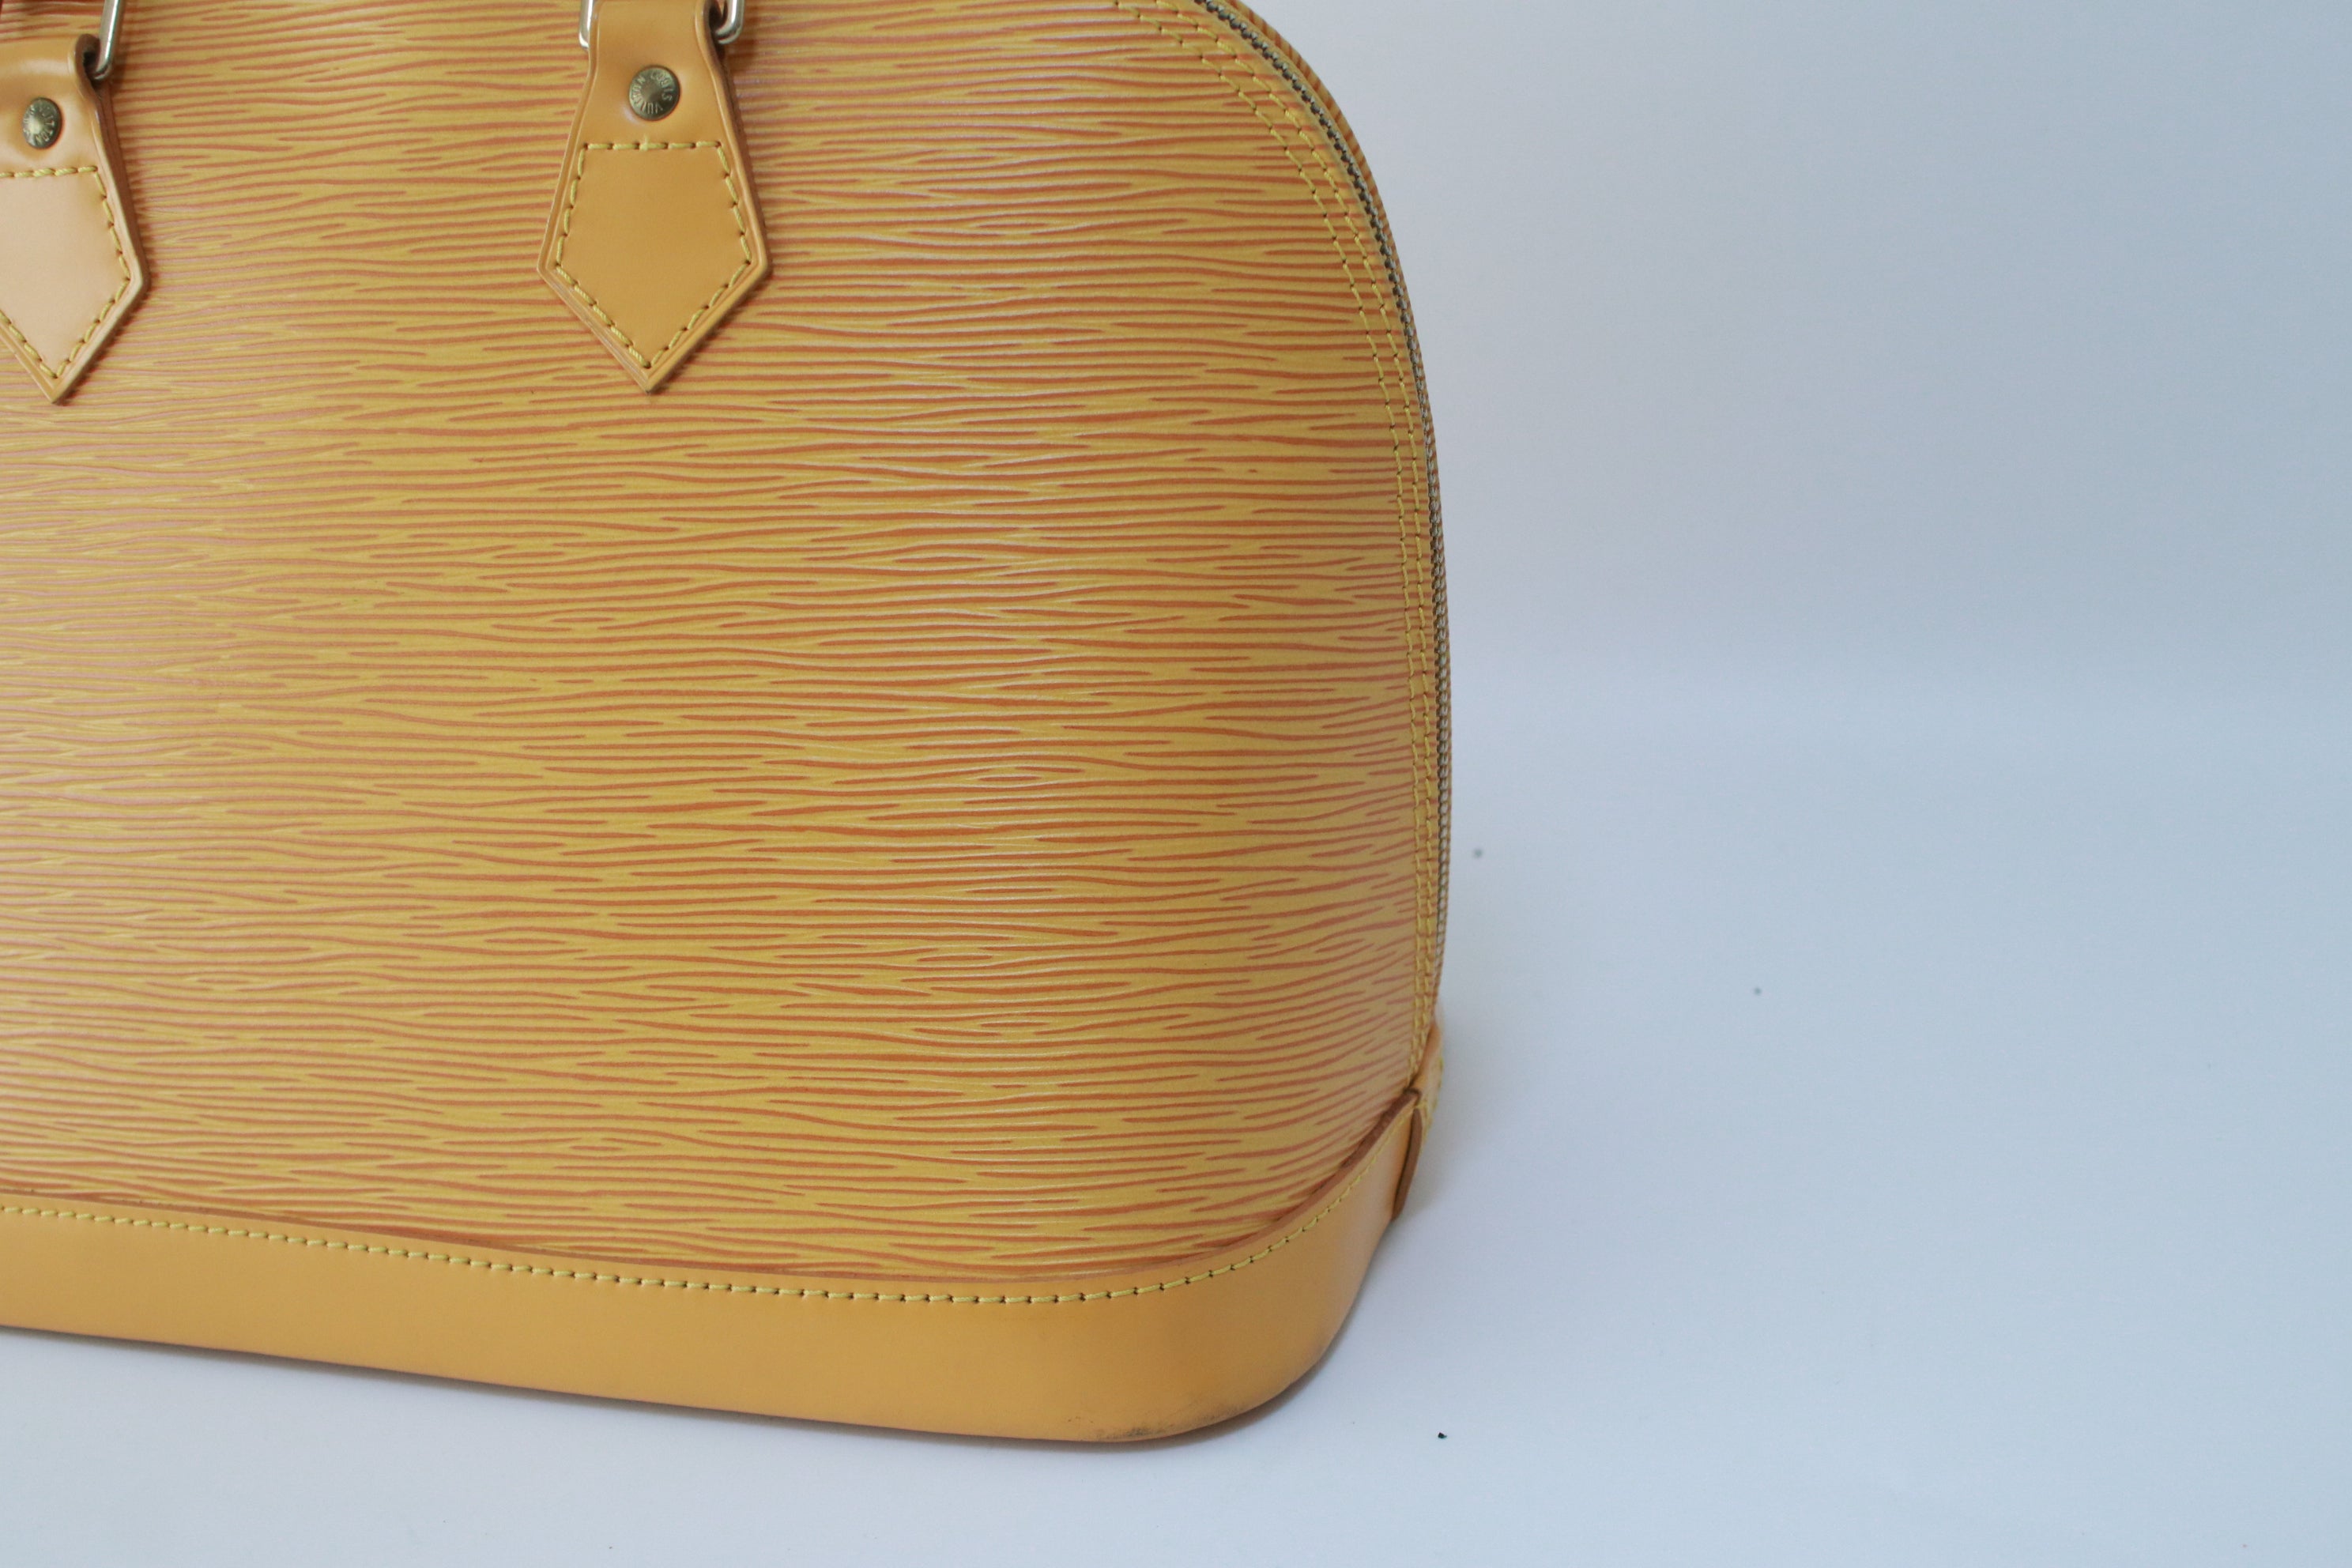 Louis Vuitton Alma PM Epi Handbag Yellow Used (7271)